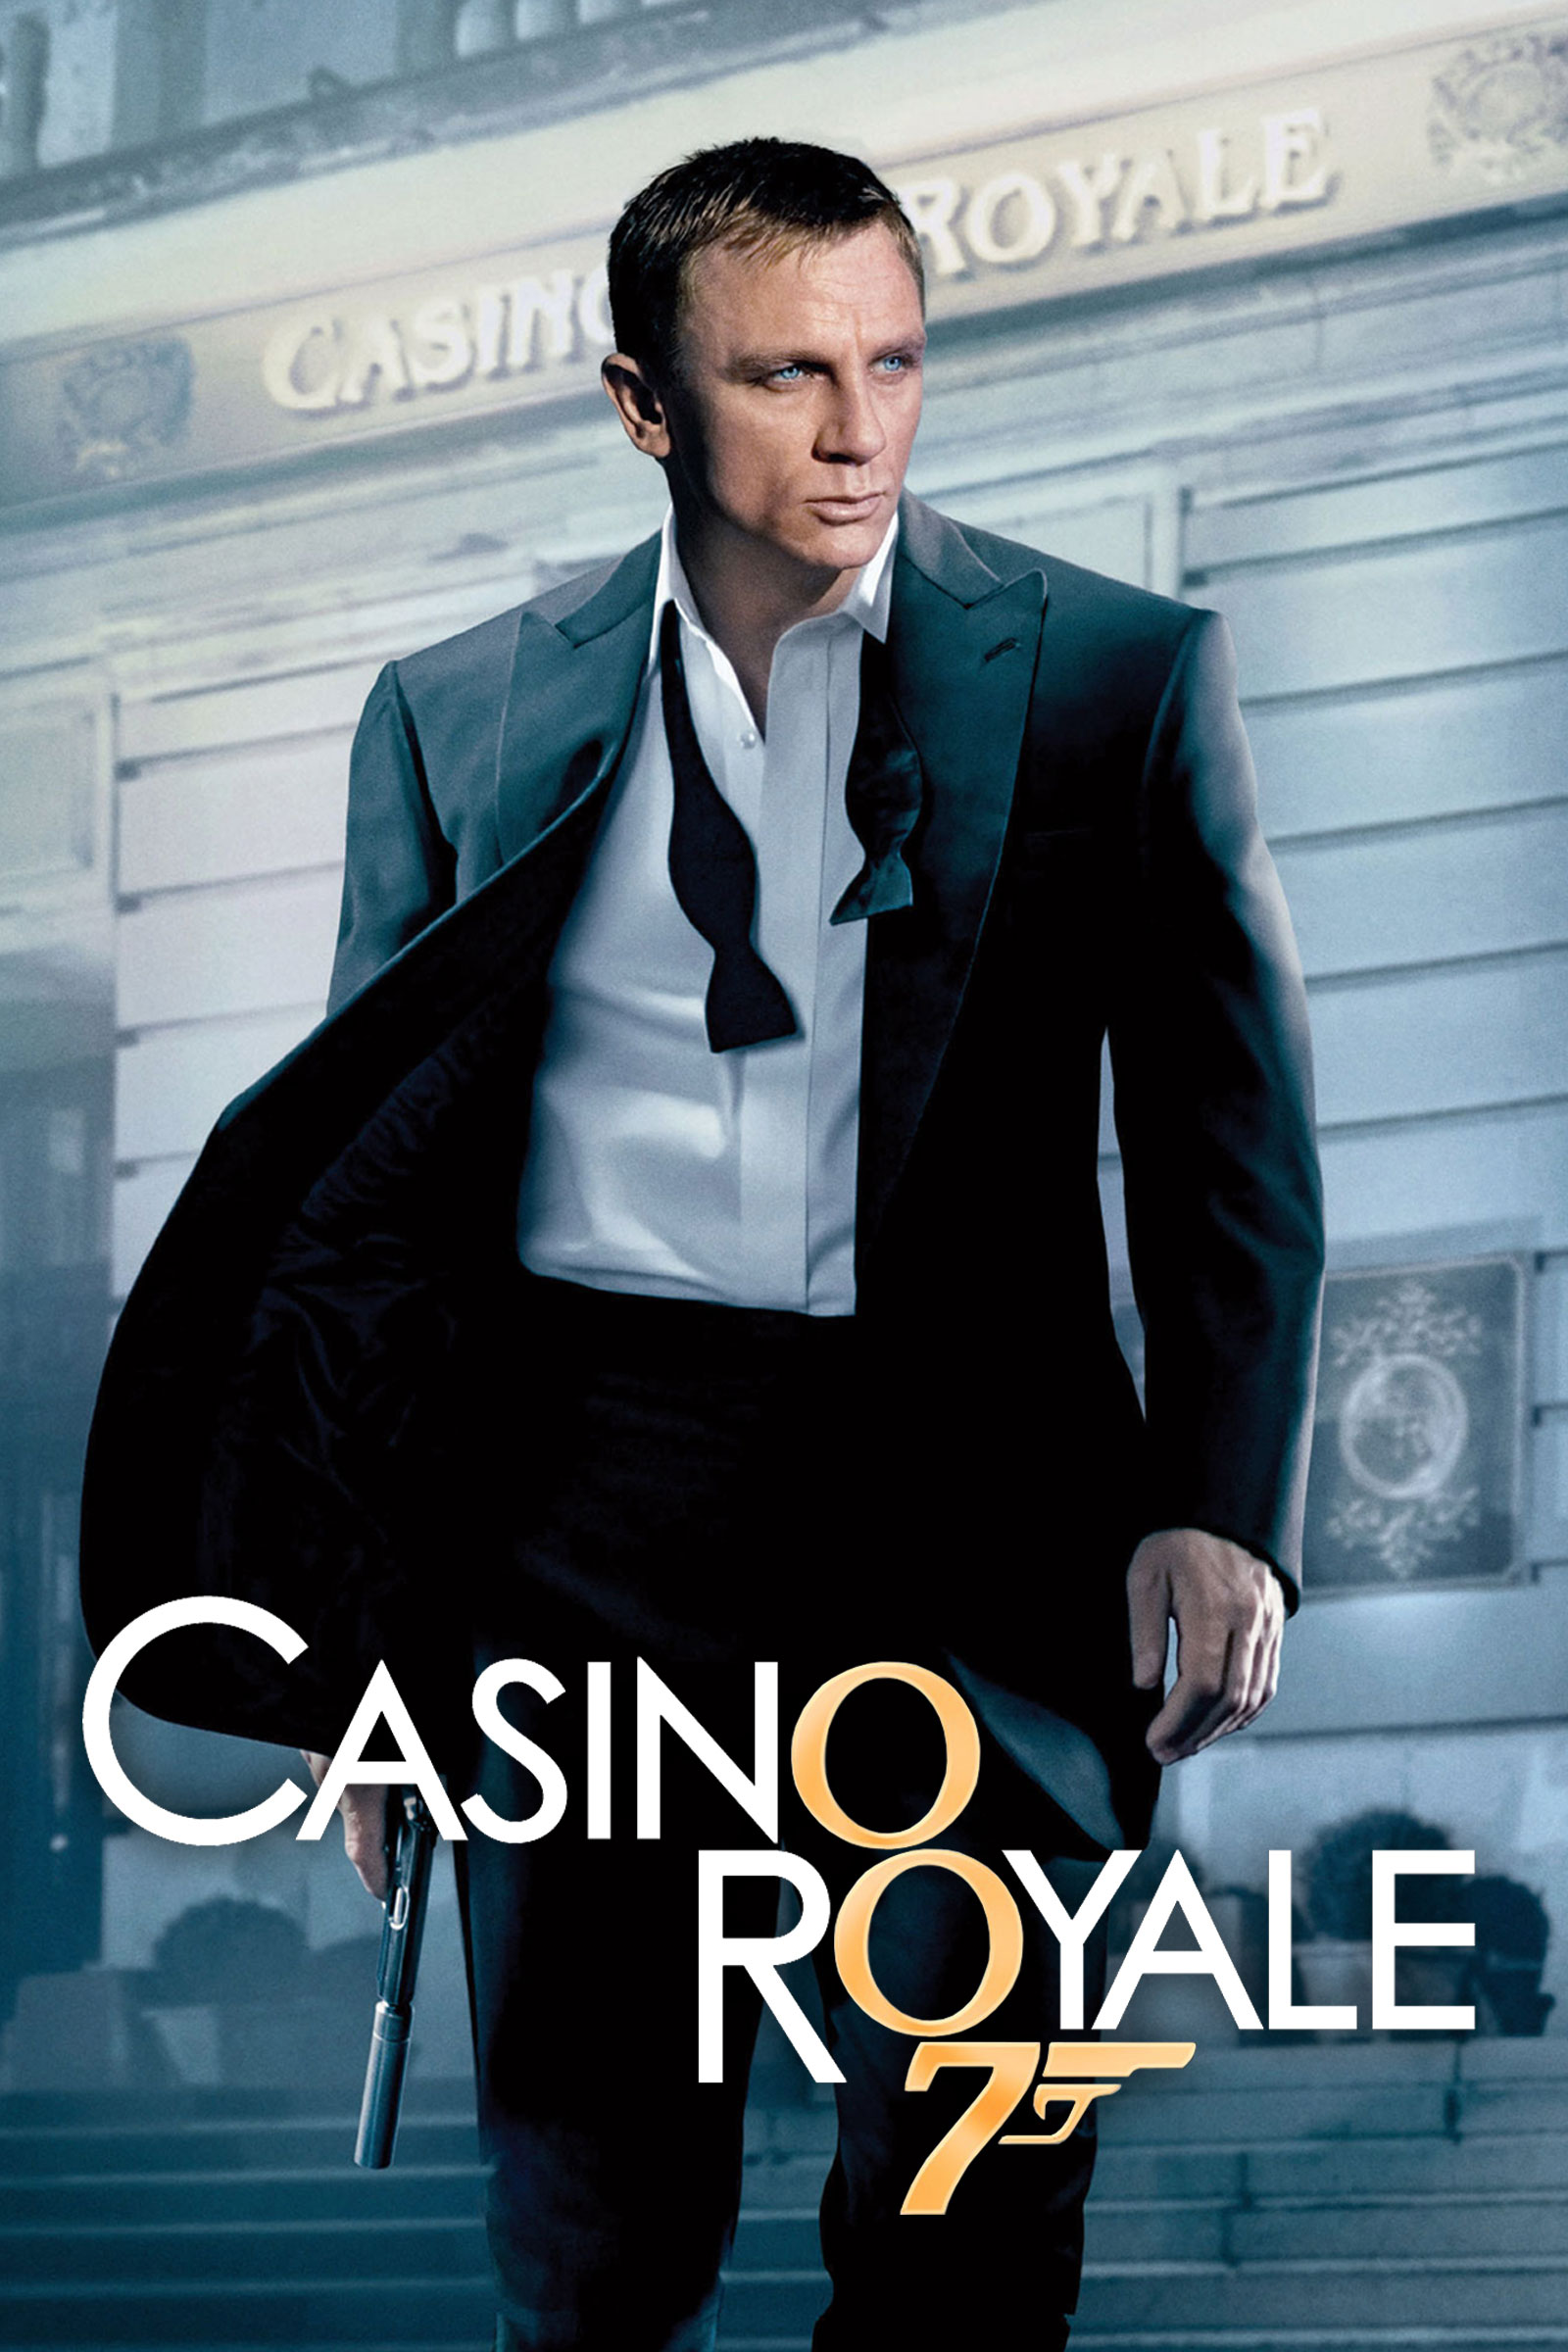 casino royale free online movie 123movies